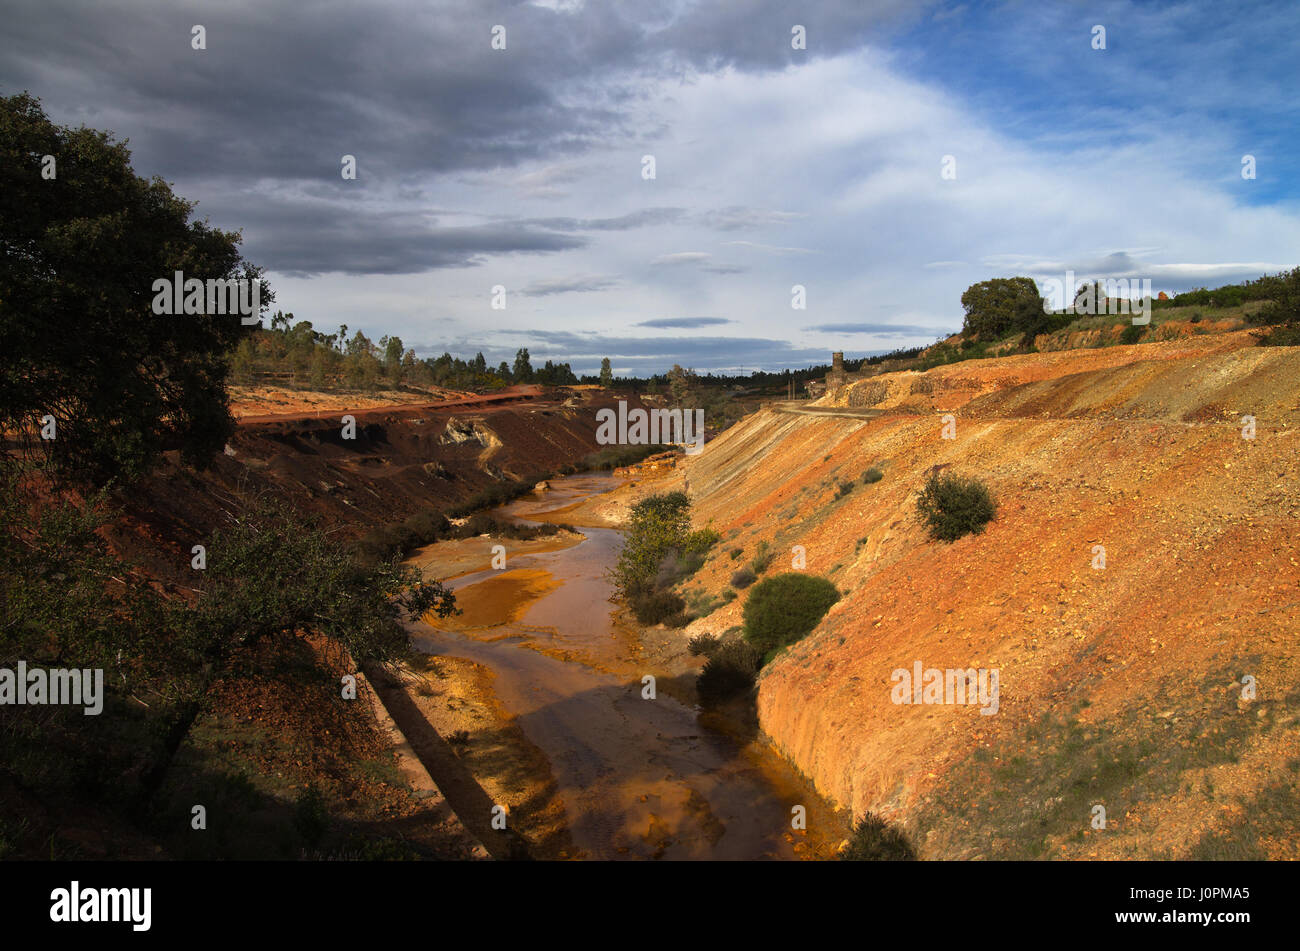 Rouge et jaune soufre et de fer de la vallée de la rivière polluée scorie à Sao Domingos mine abandonnée. Mertola, Alentejo, Portugal. Banque D'Images